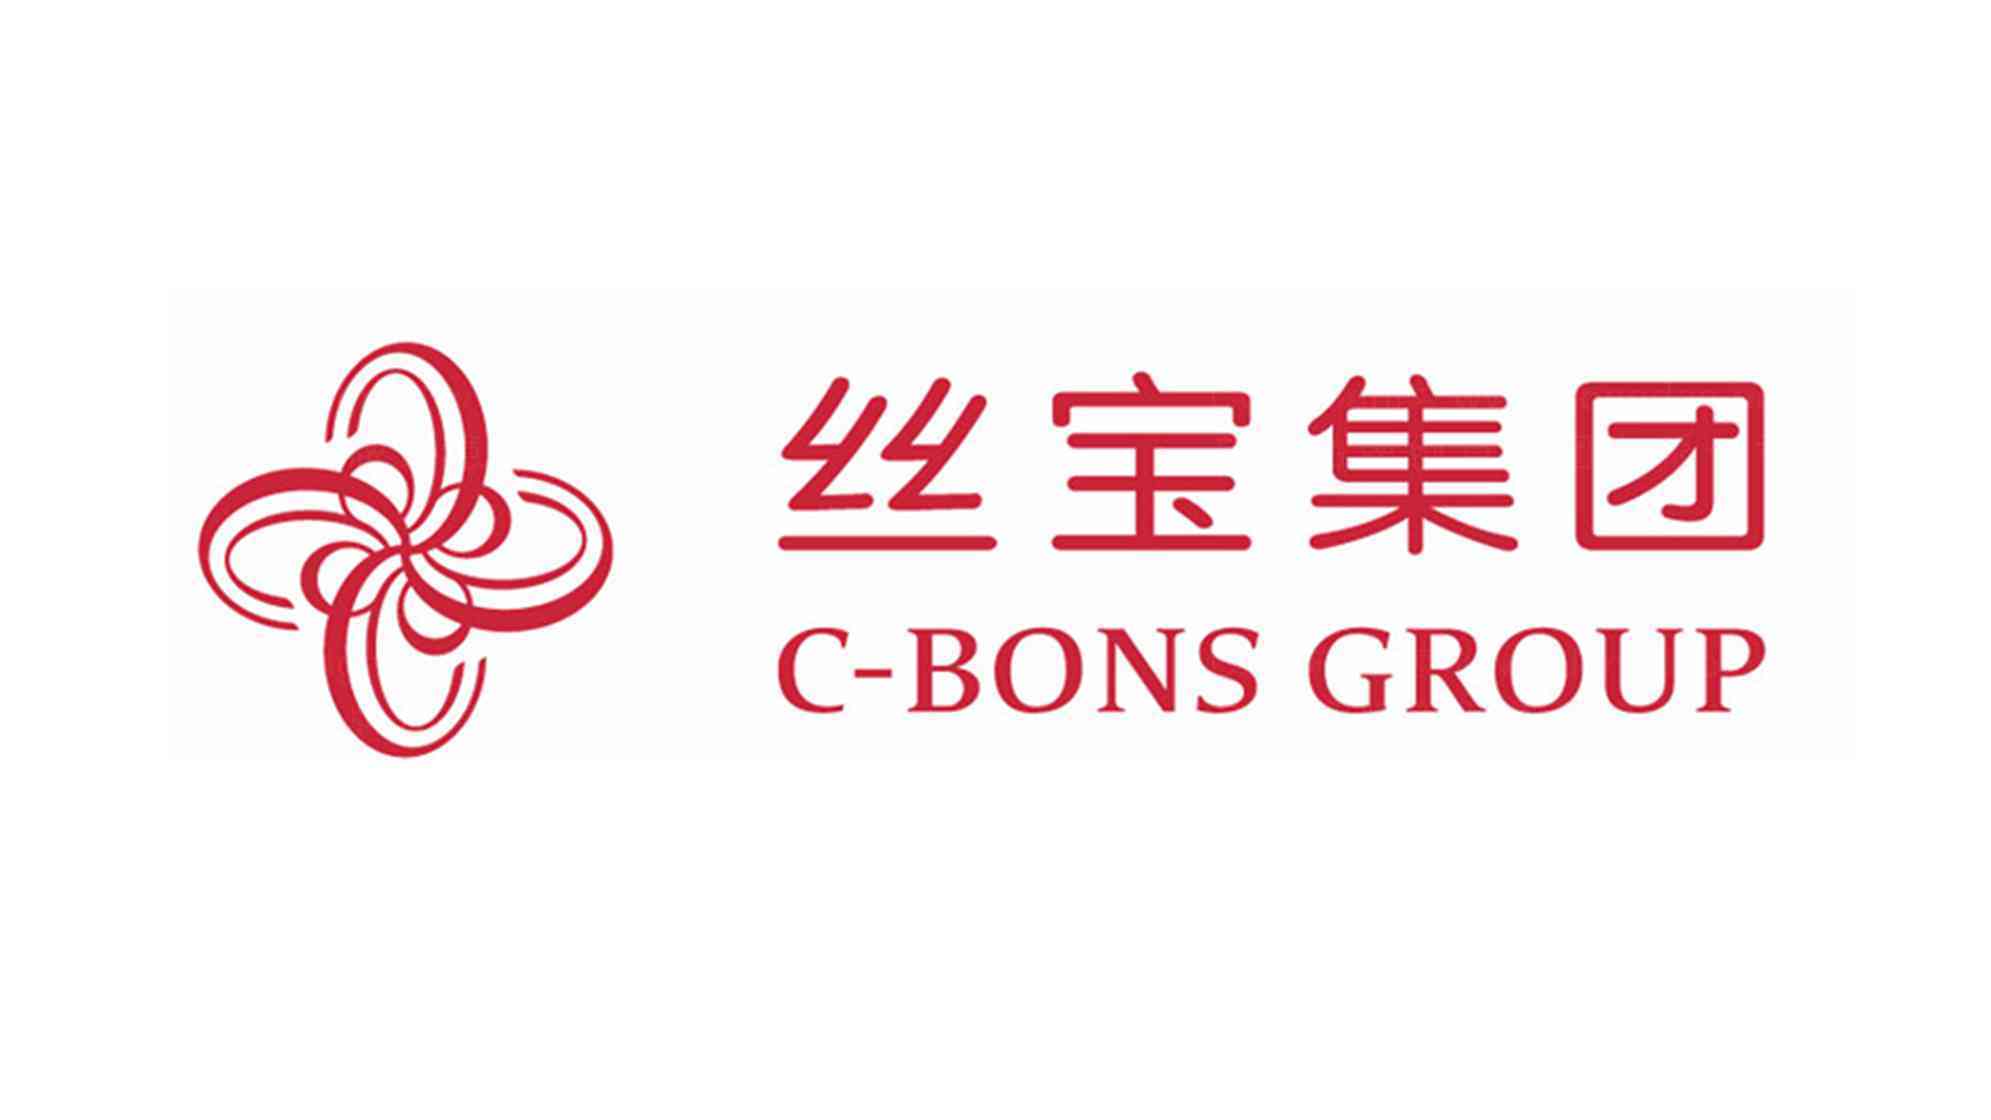 丝宝集团公司logo设计图片素材